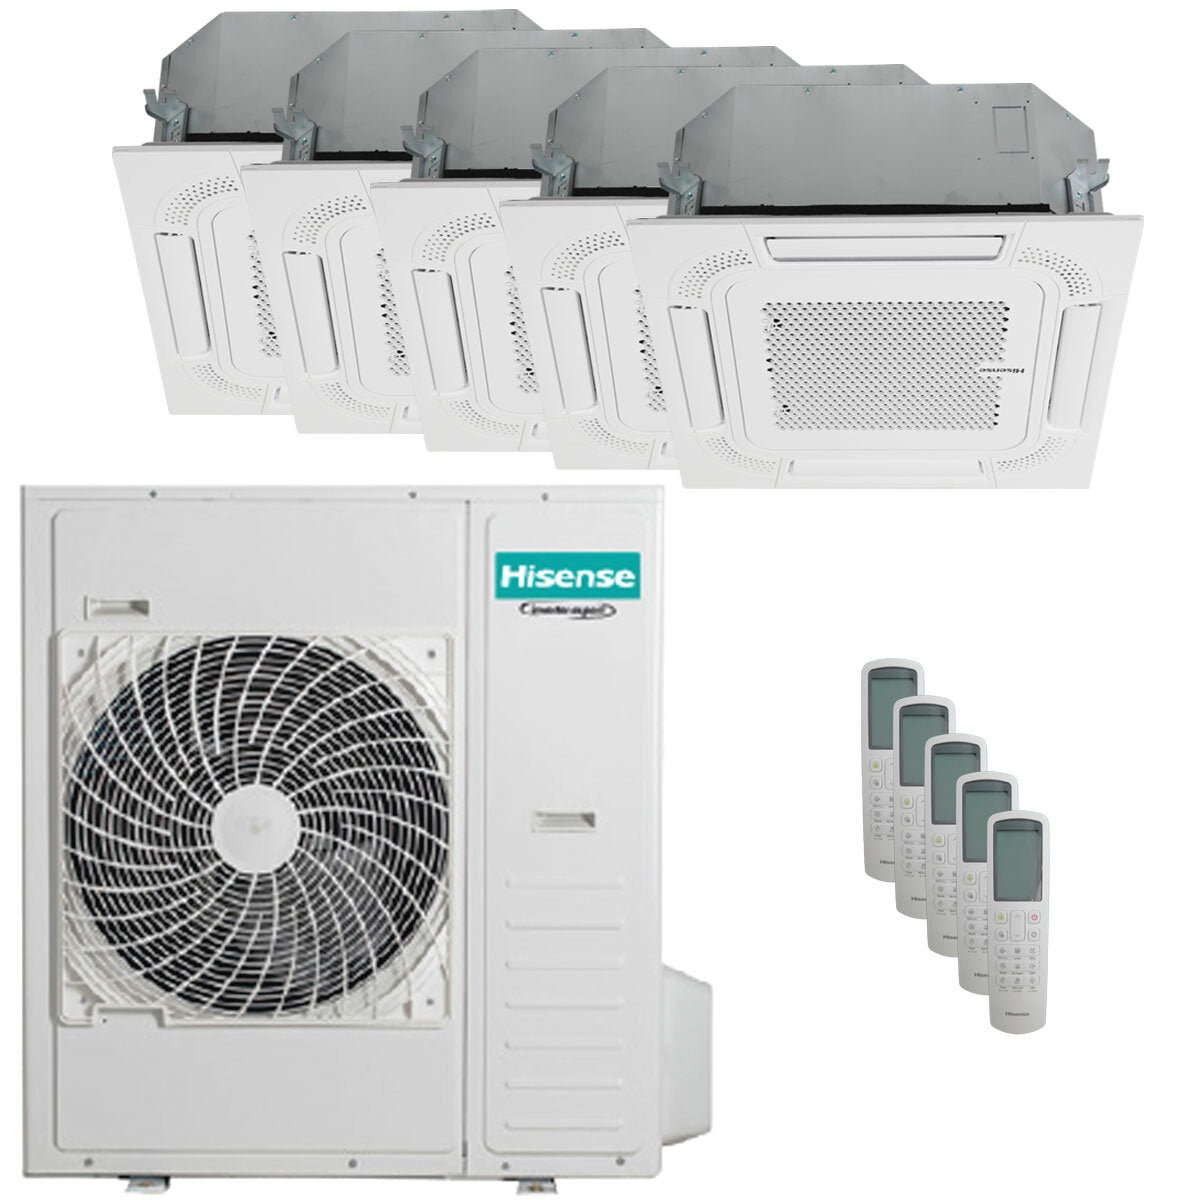 Hisense air conditioner ACT penta split 9000+9000+9000+9000+18000 BTU inverter outdoor unit 12.5 kW